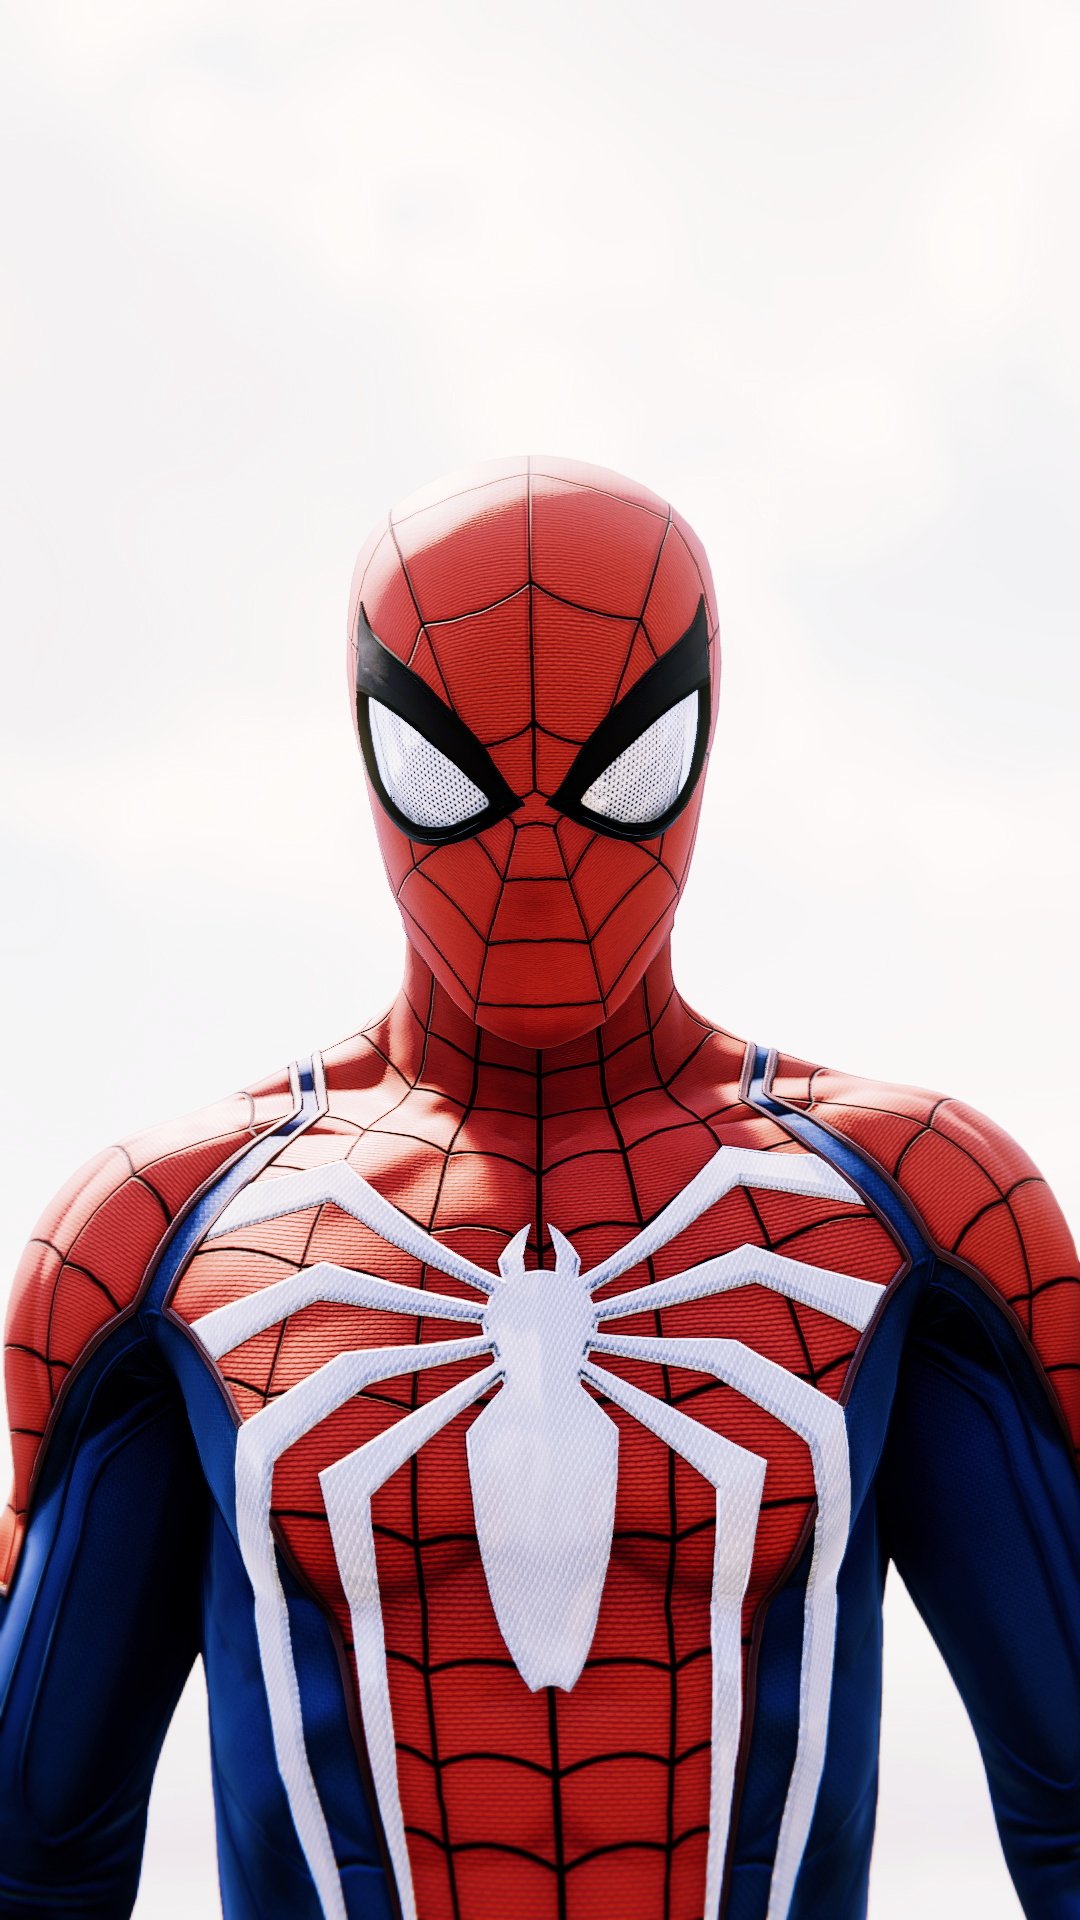 Đây chắc chắn là một sản phẩm game đáng mong đợi cho các fan hâm mộ những siêu anh hùng Marvel. Hãy tham khảo hình ảnh liên quan để có cái nhìn đầy đủ và sắc nét hơn về sản phẩm Spider-Man PS4 nhé!